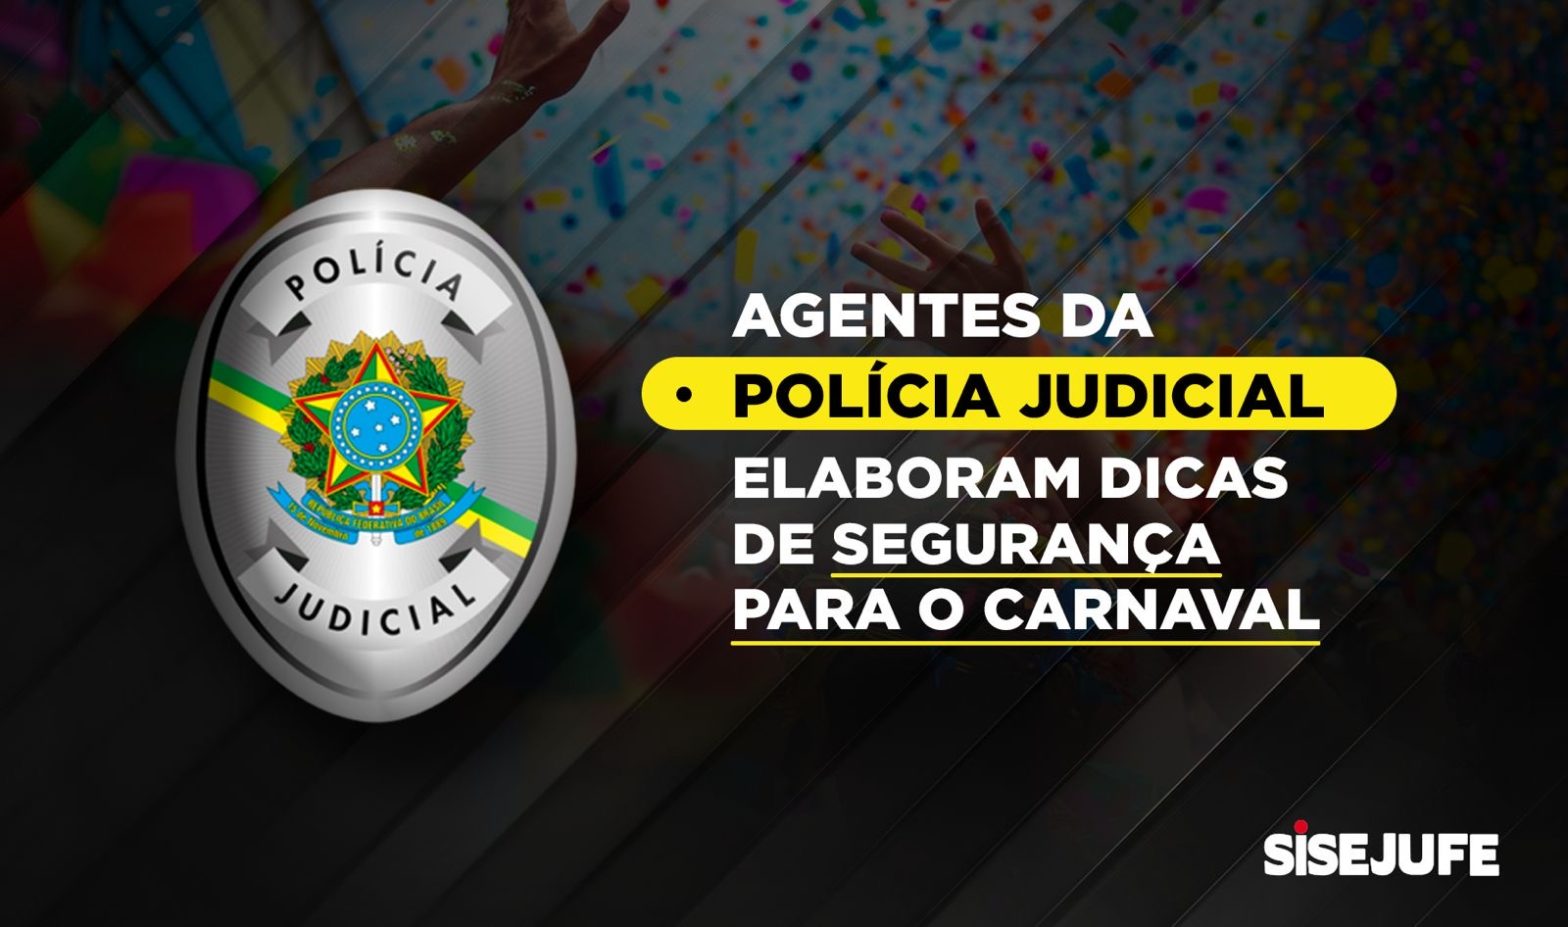 Agentes da Polícia Judicial de Teresópolis elaboram dicas de segurança para curtir o Carnaval sem sustos, SISEJUFE